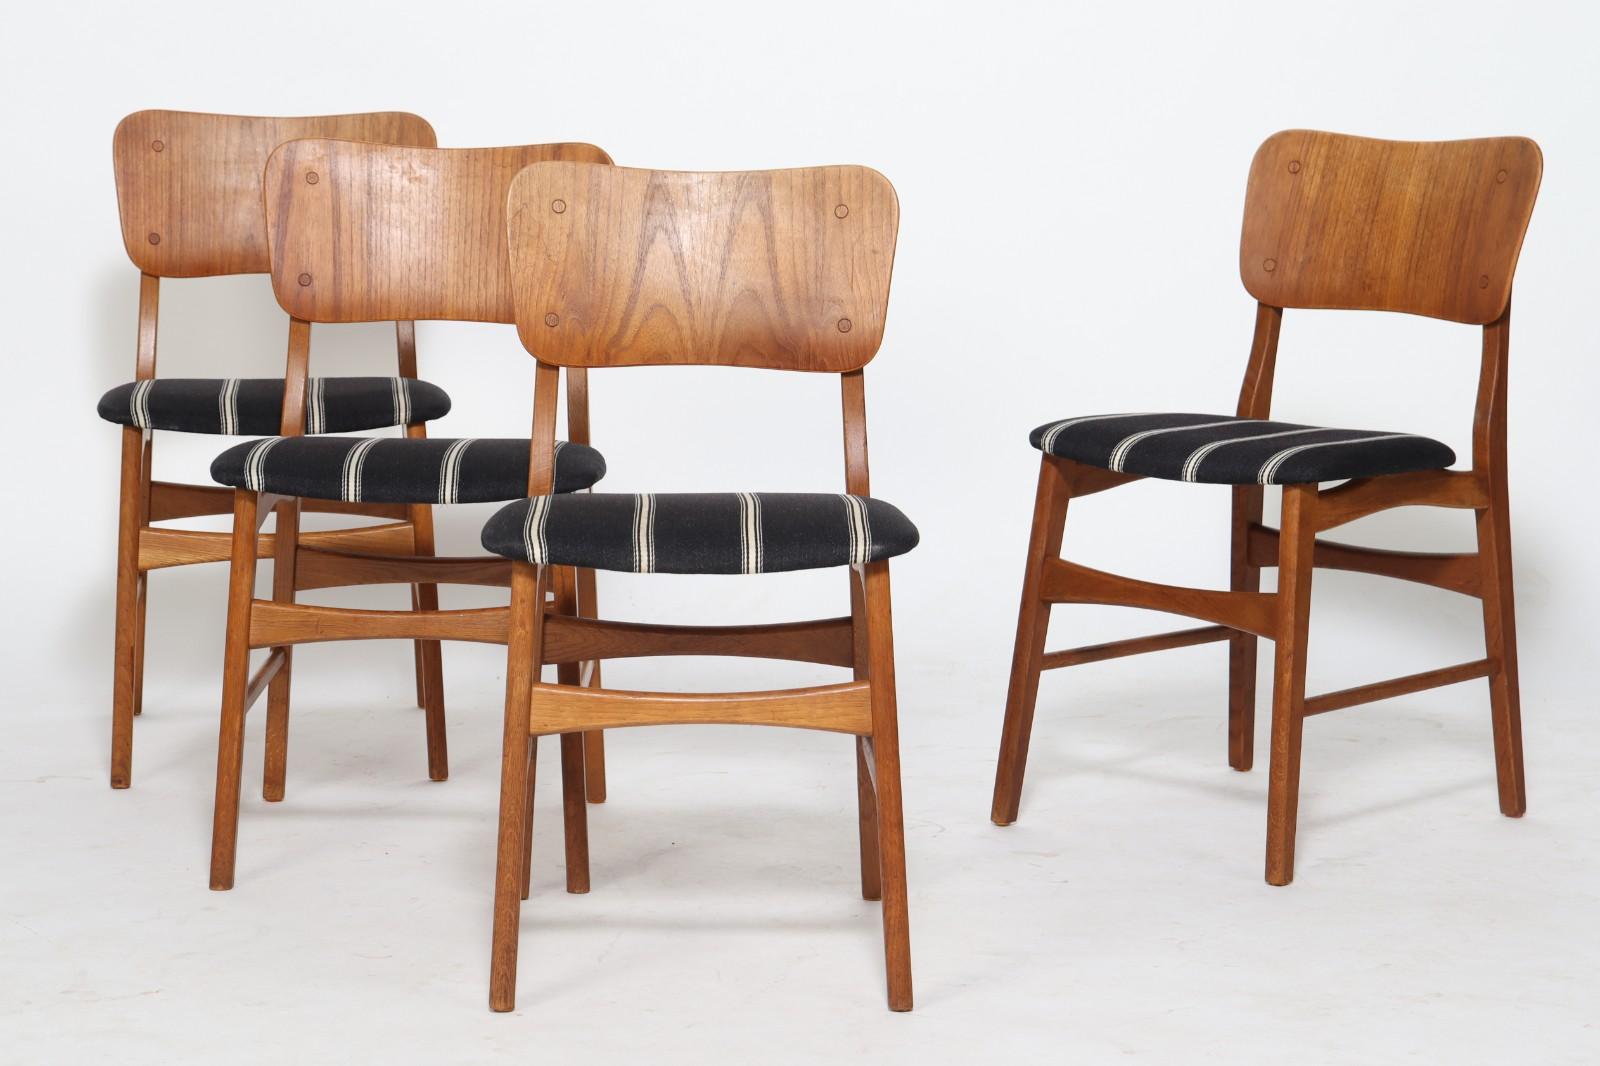 Ib Kofod Larsen. Vier Stühle mit Rückenlehne aus Teakholz, Gestell aus Eiche, Sitze mit Wolle gepolstert. Gebrauchsspuren. H 80 cm, SH 45 cm 